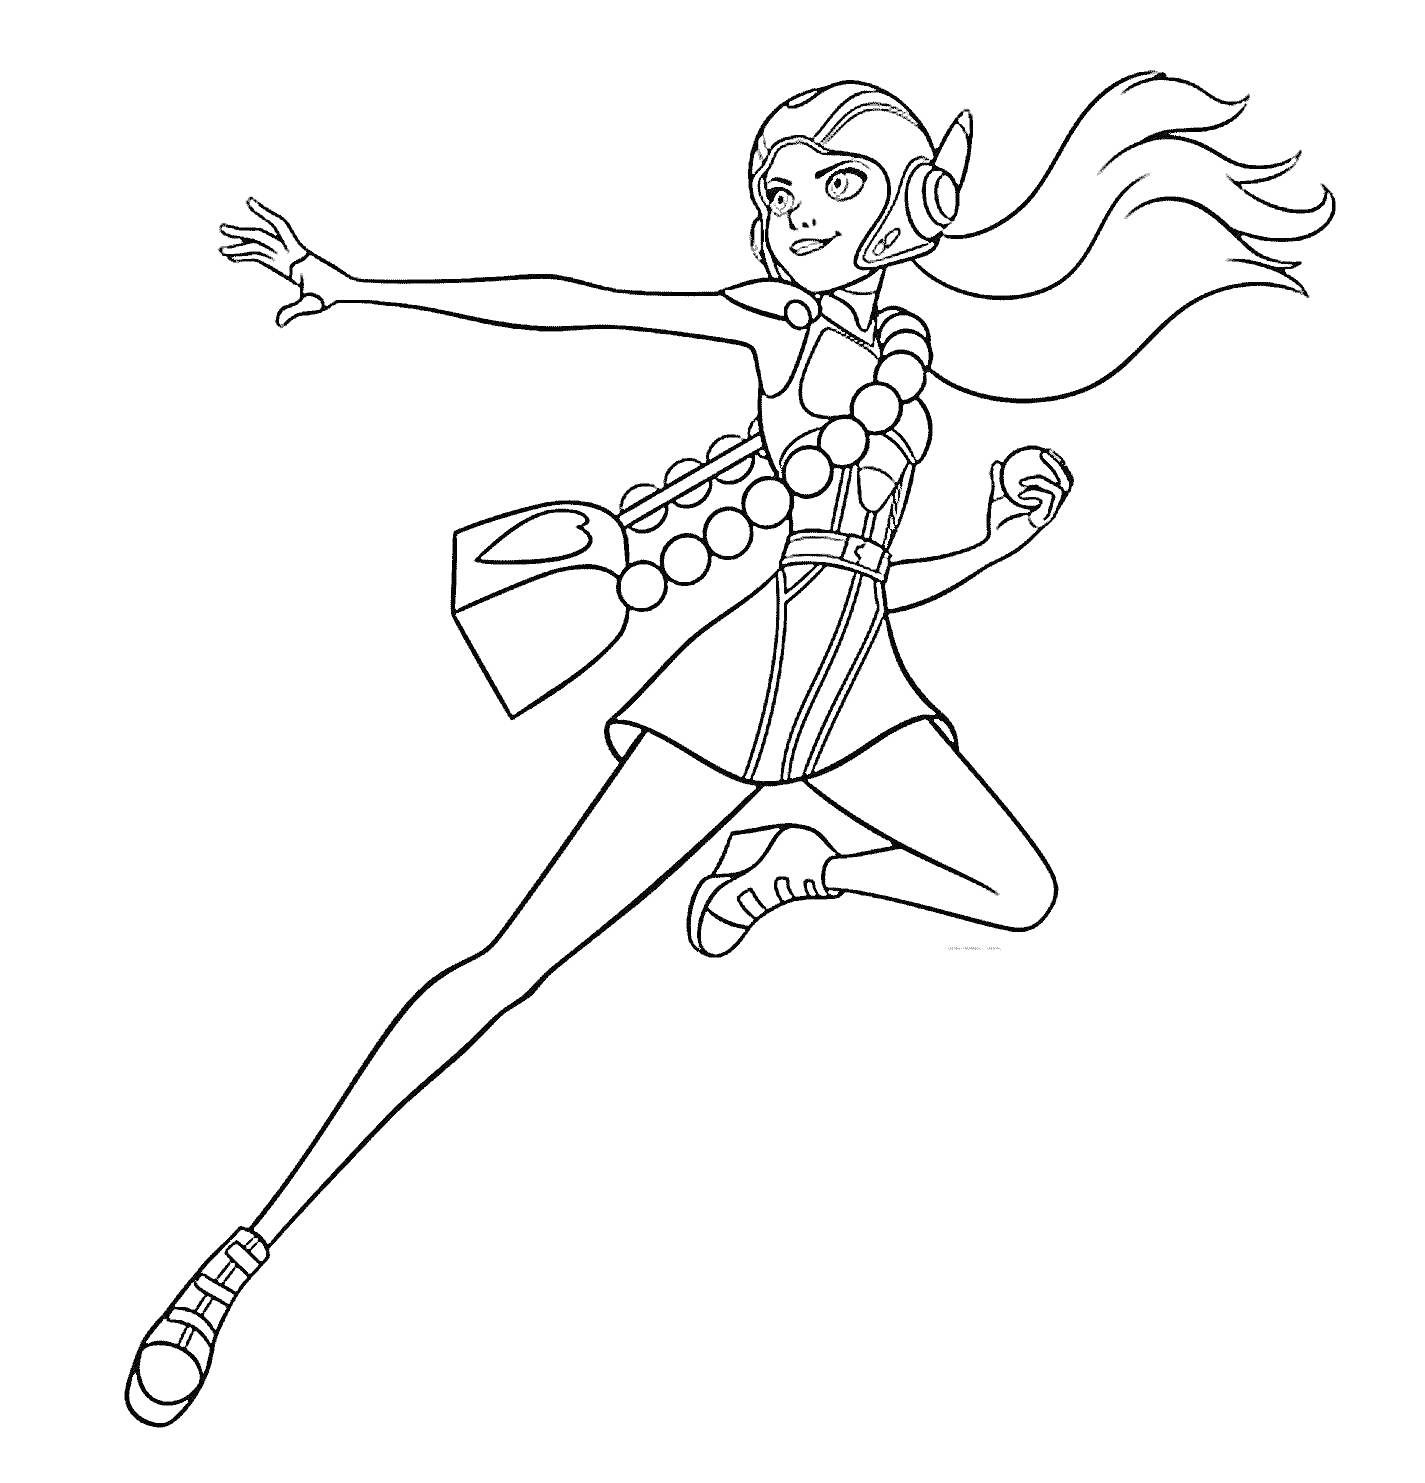 Девушка в костюме героя с длинными волосами и наушниками, держащая мяч, в прыжке